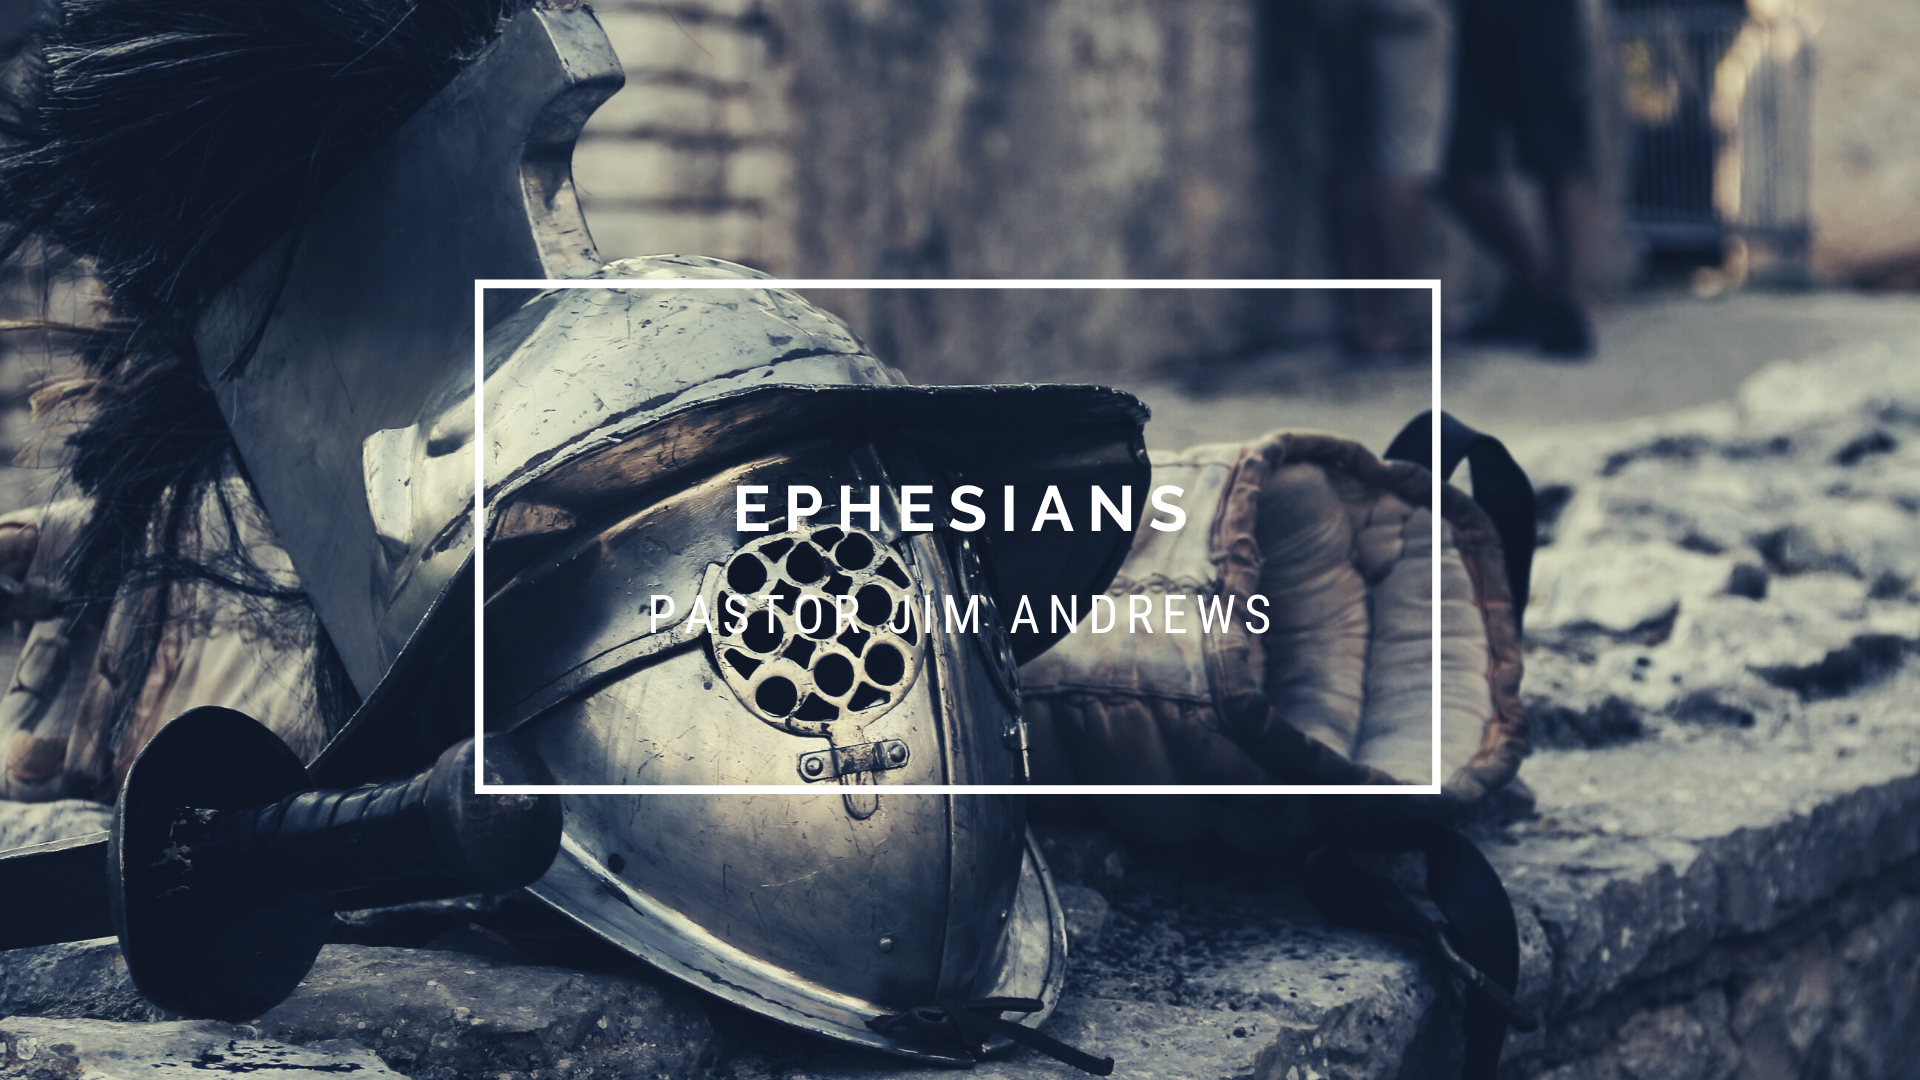 Ephesians 5:9-14